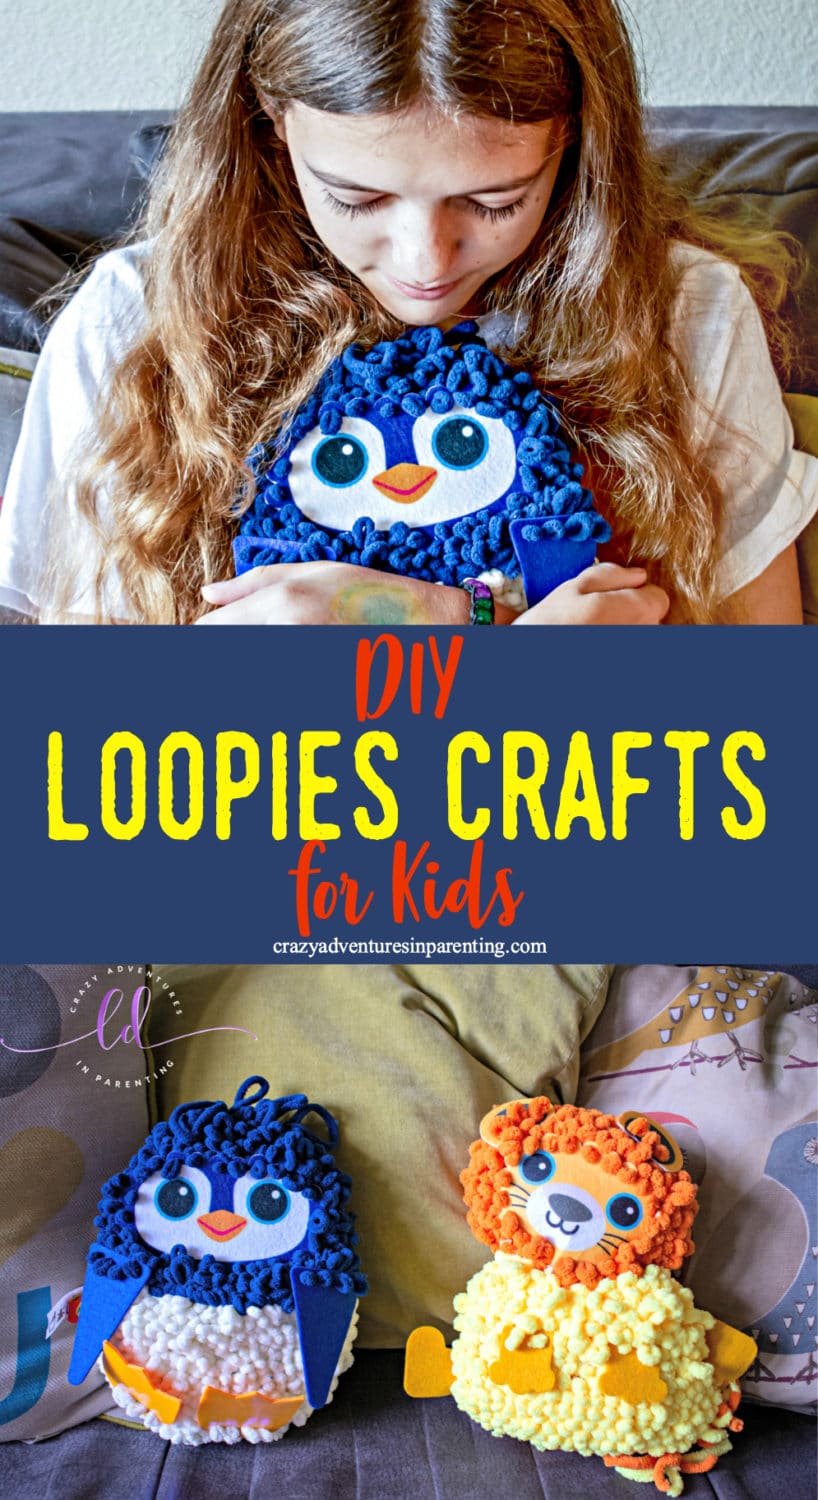 DIY Loopies Crafts for Kids